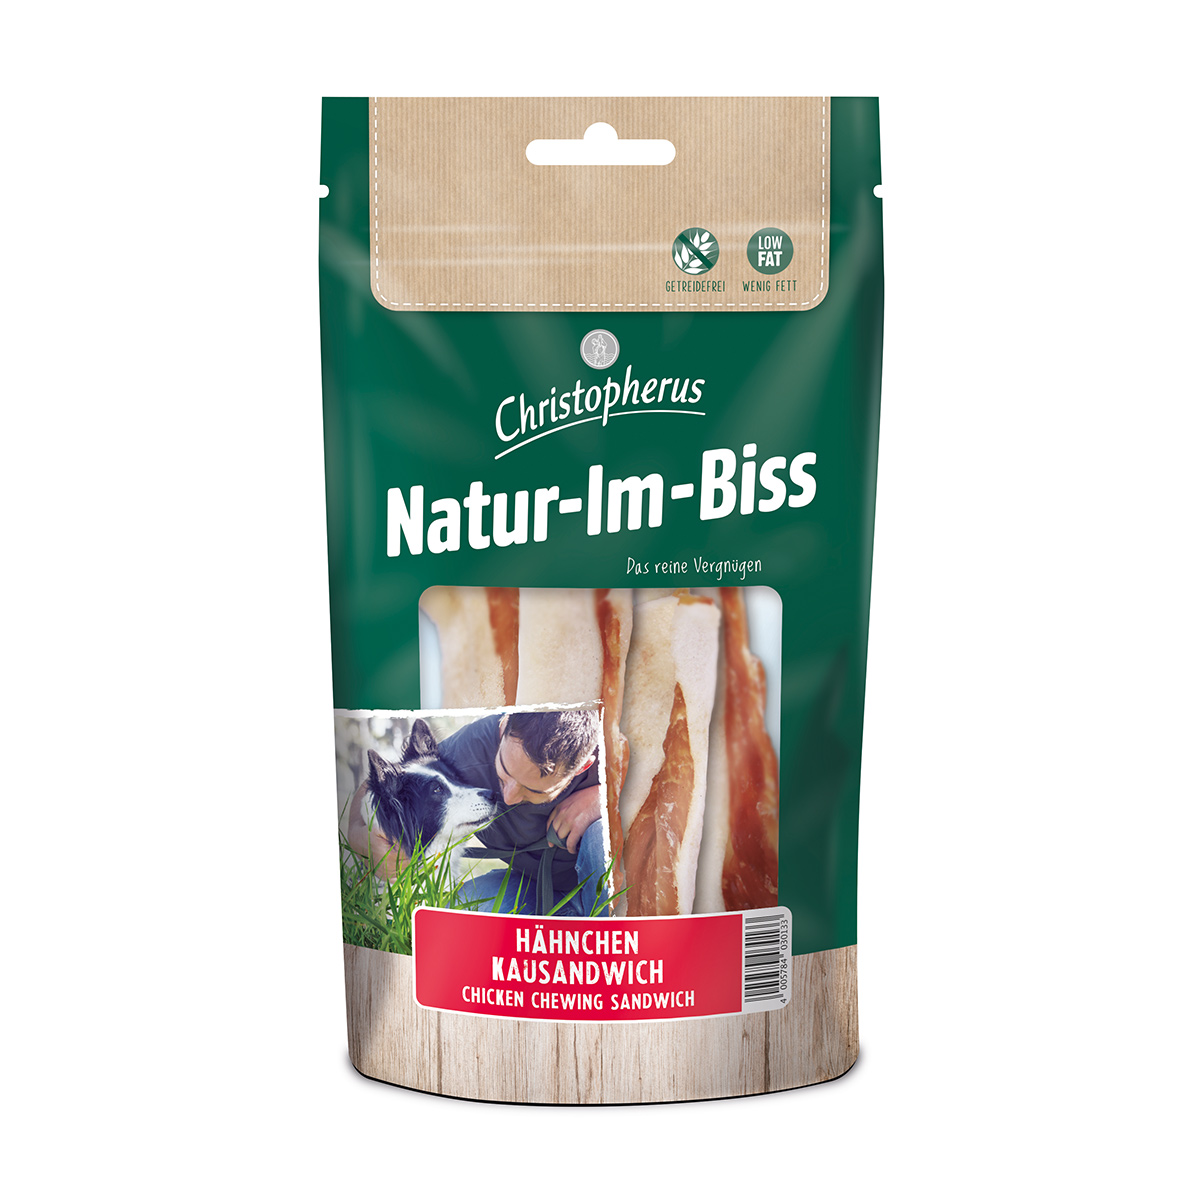 Christopherus Natur-Im-Biss žvýkací sendvič, 70 g